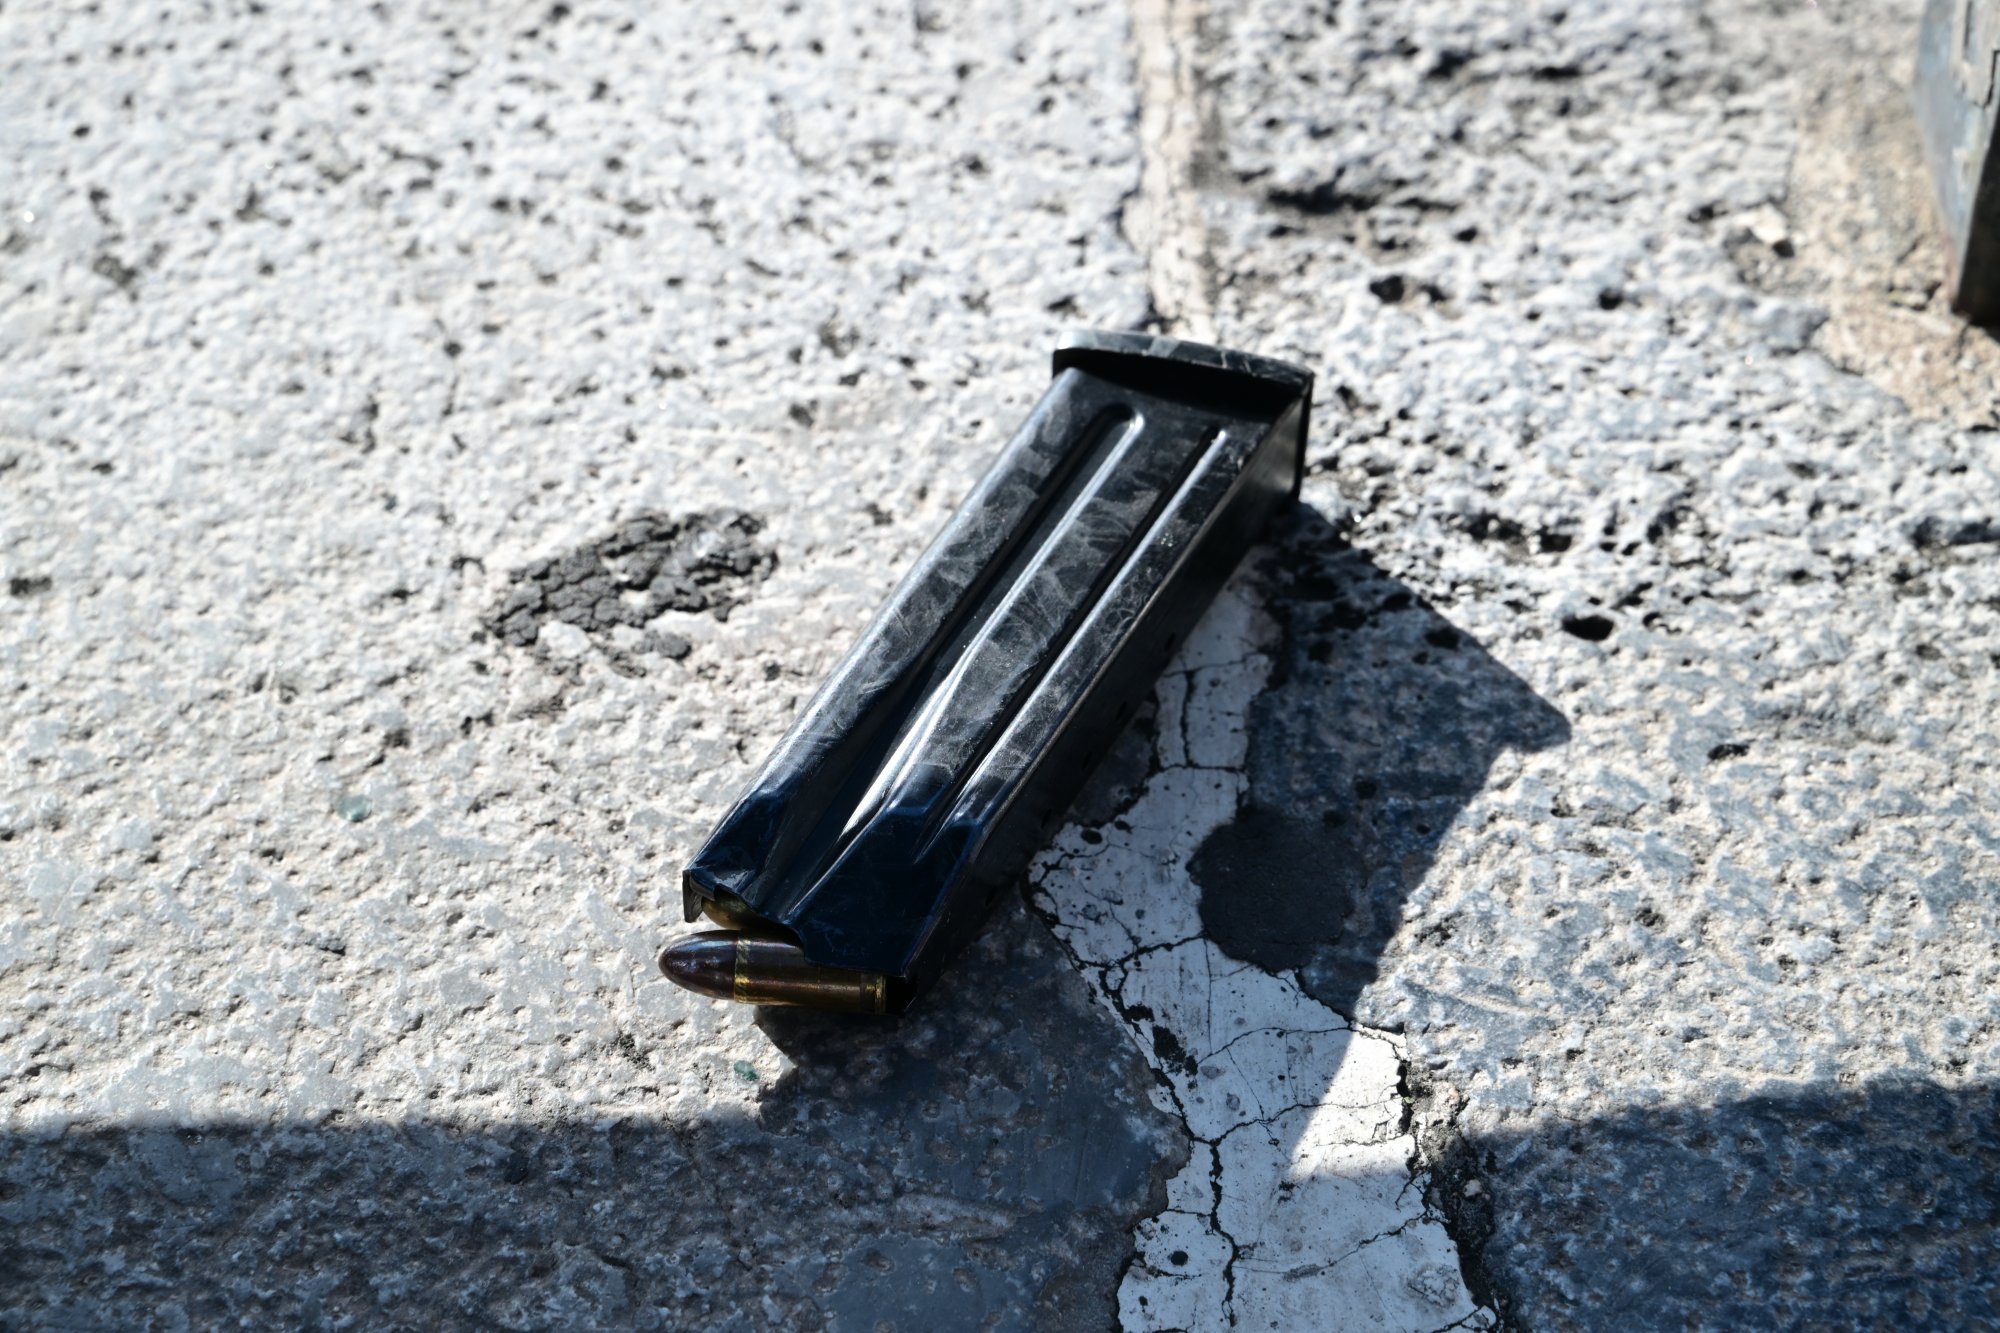 Σύνταγμα: Αστυνομικός έχασε γεμιστήρα όπλου με σφαίρες